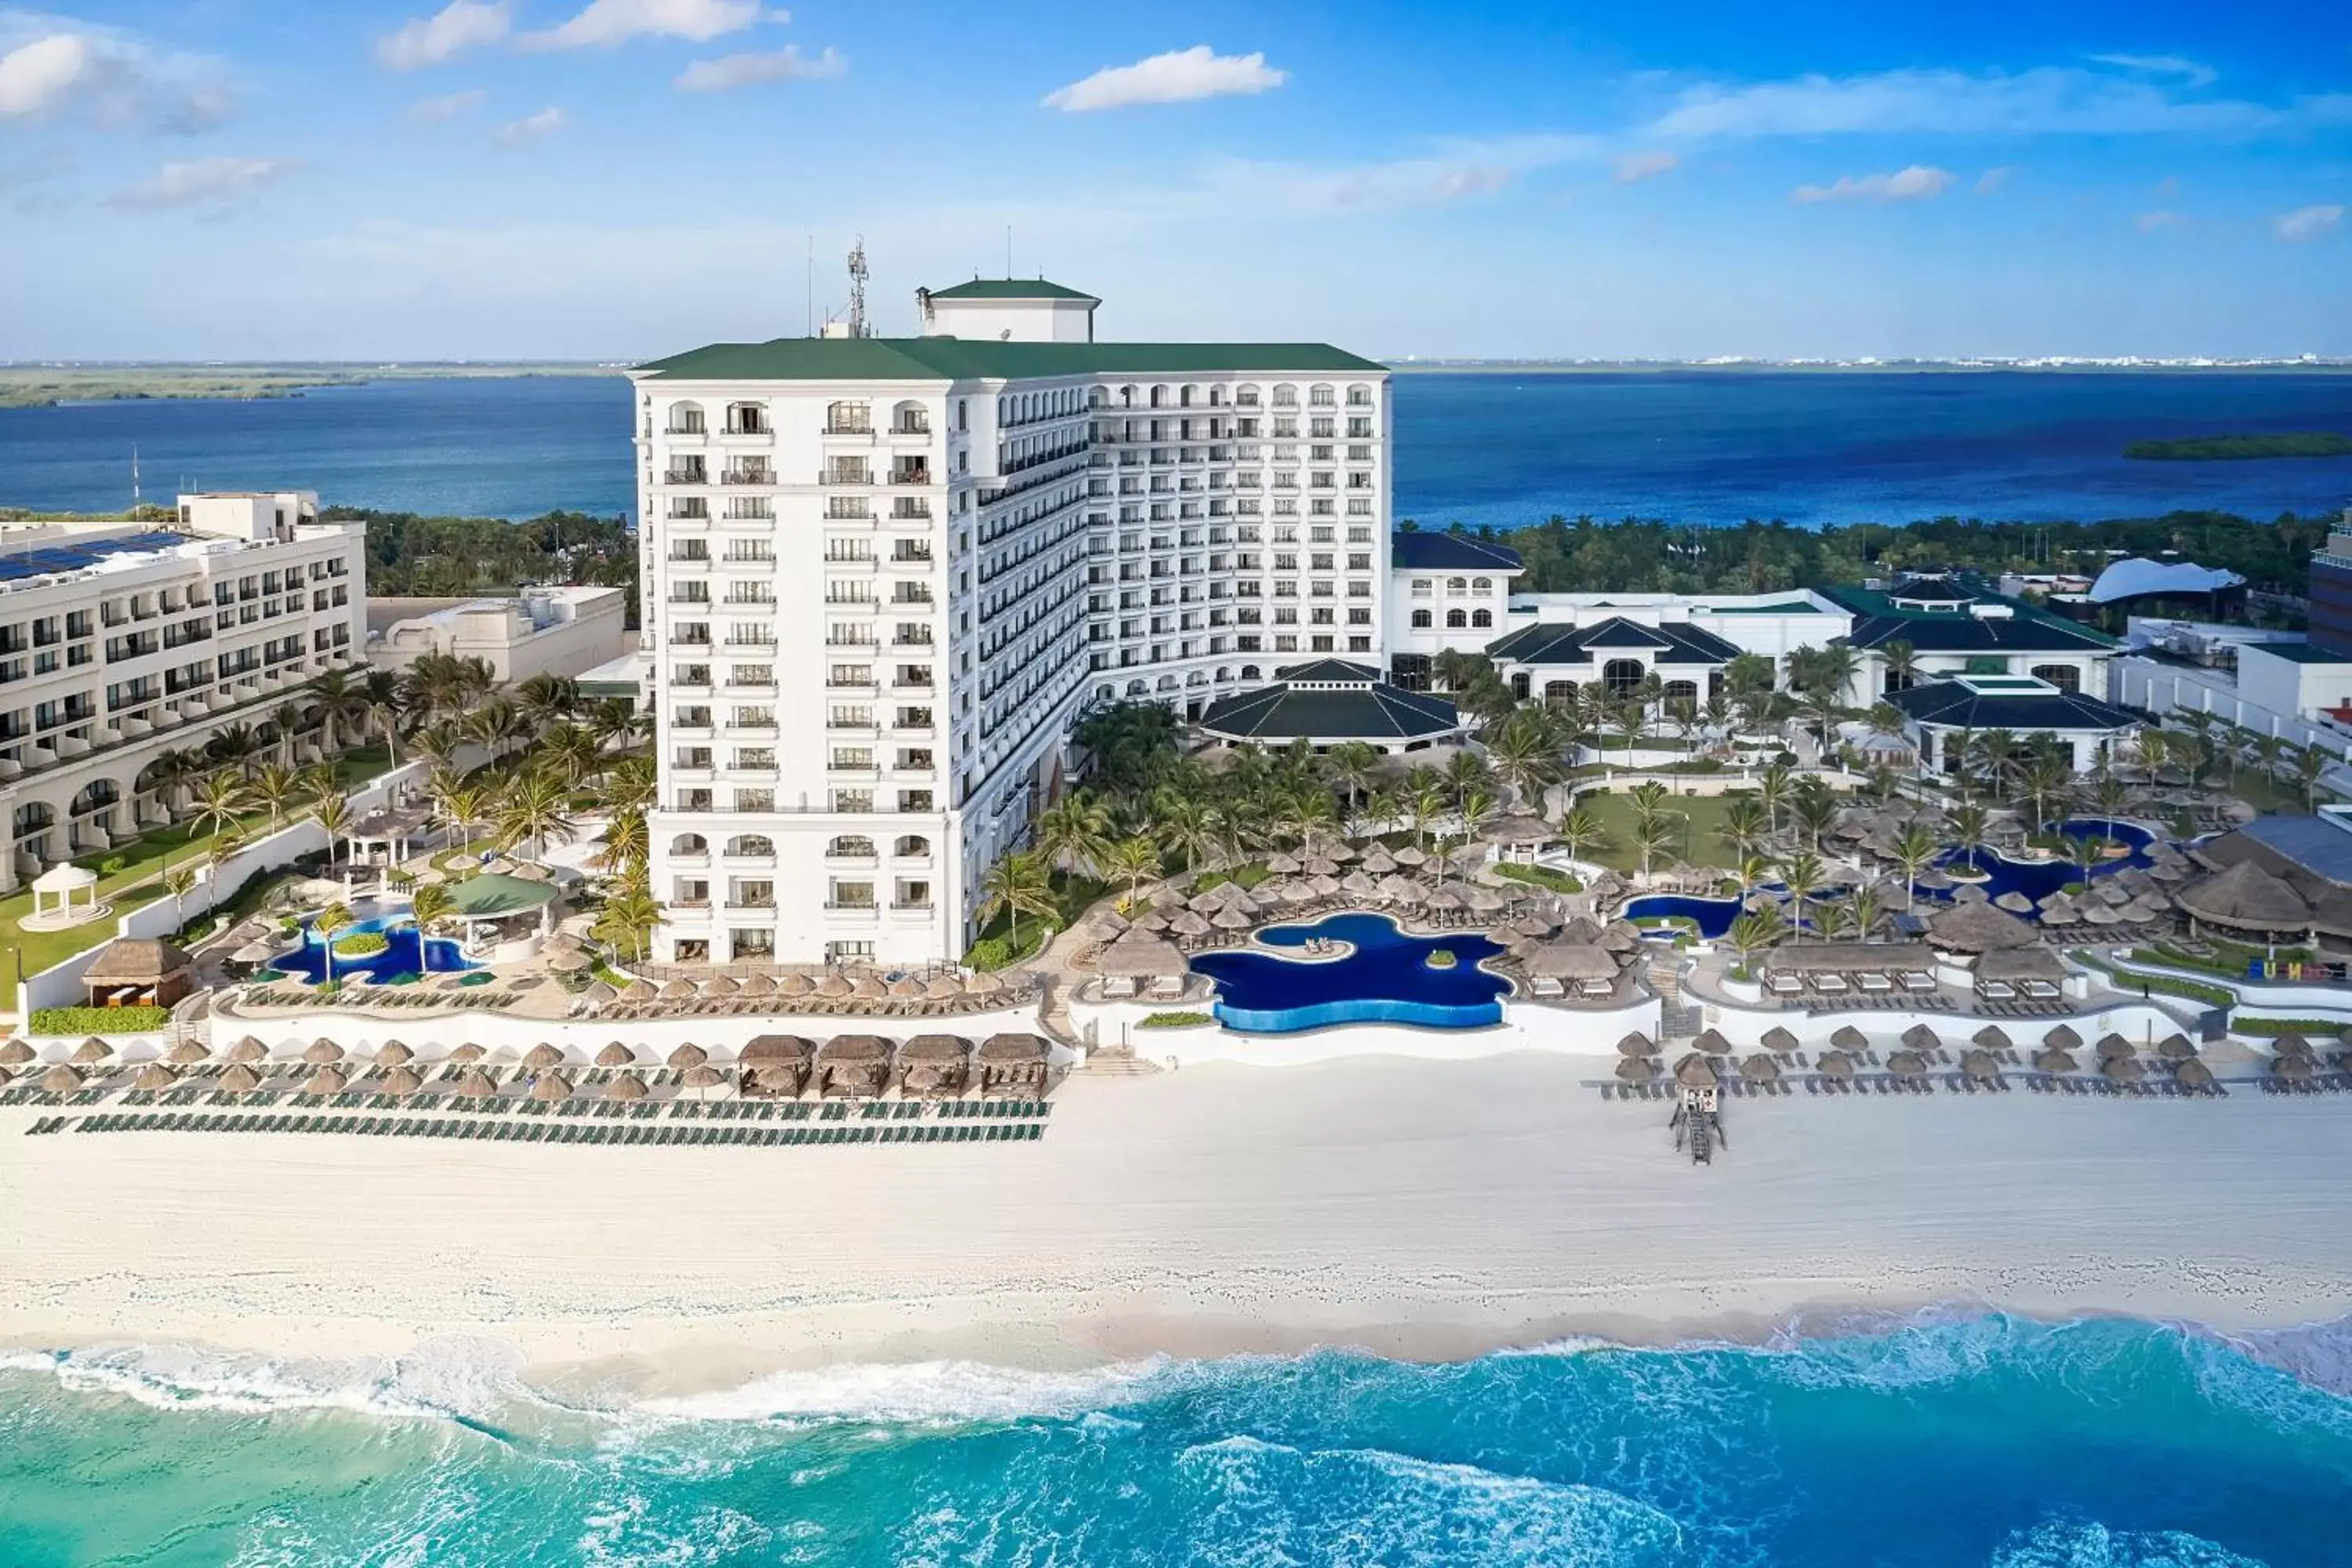 Other, Bird's-eye View in JW Marriott Cancun Resort & Spa